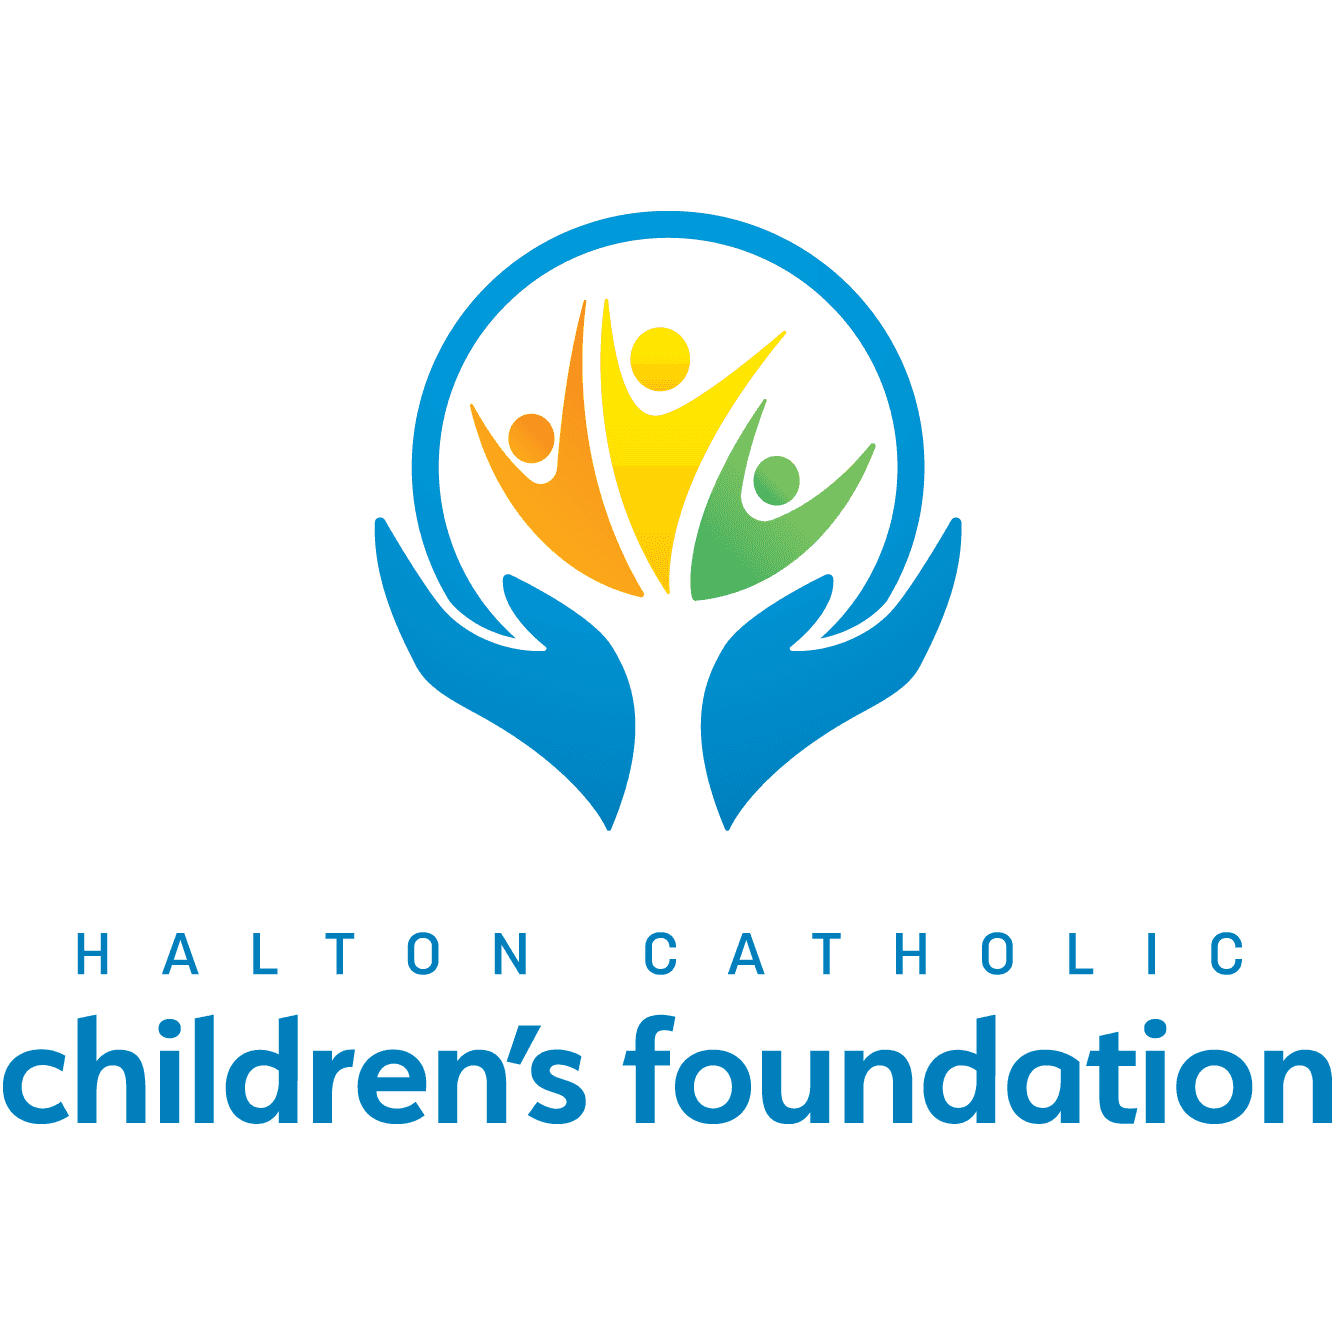 Halton Catholic Children's Foundation (HCCF)'s Logo